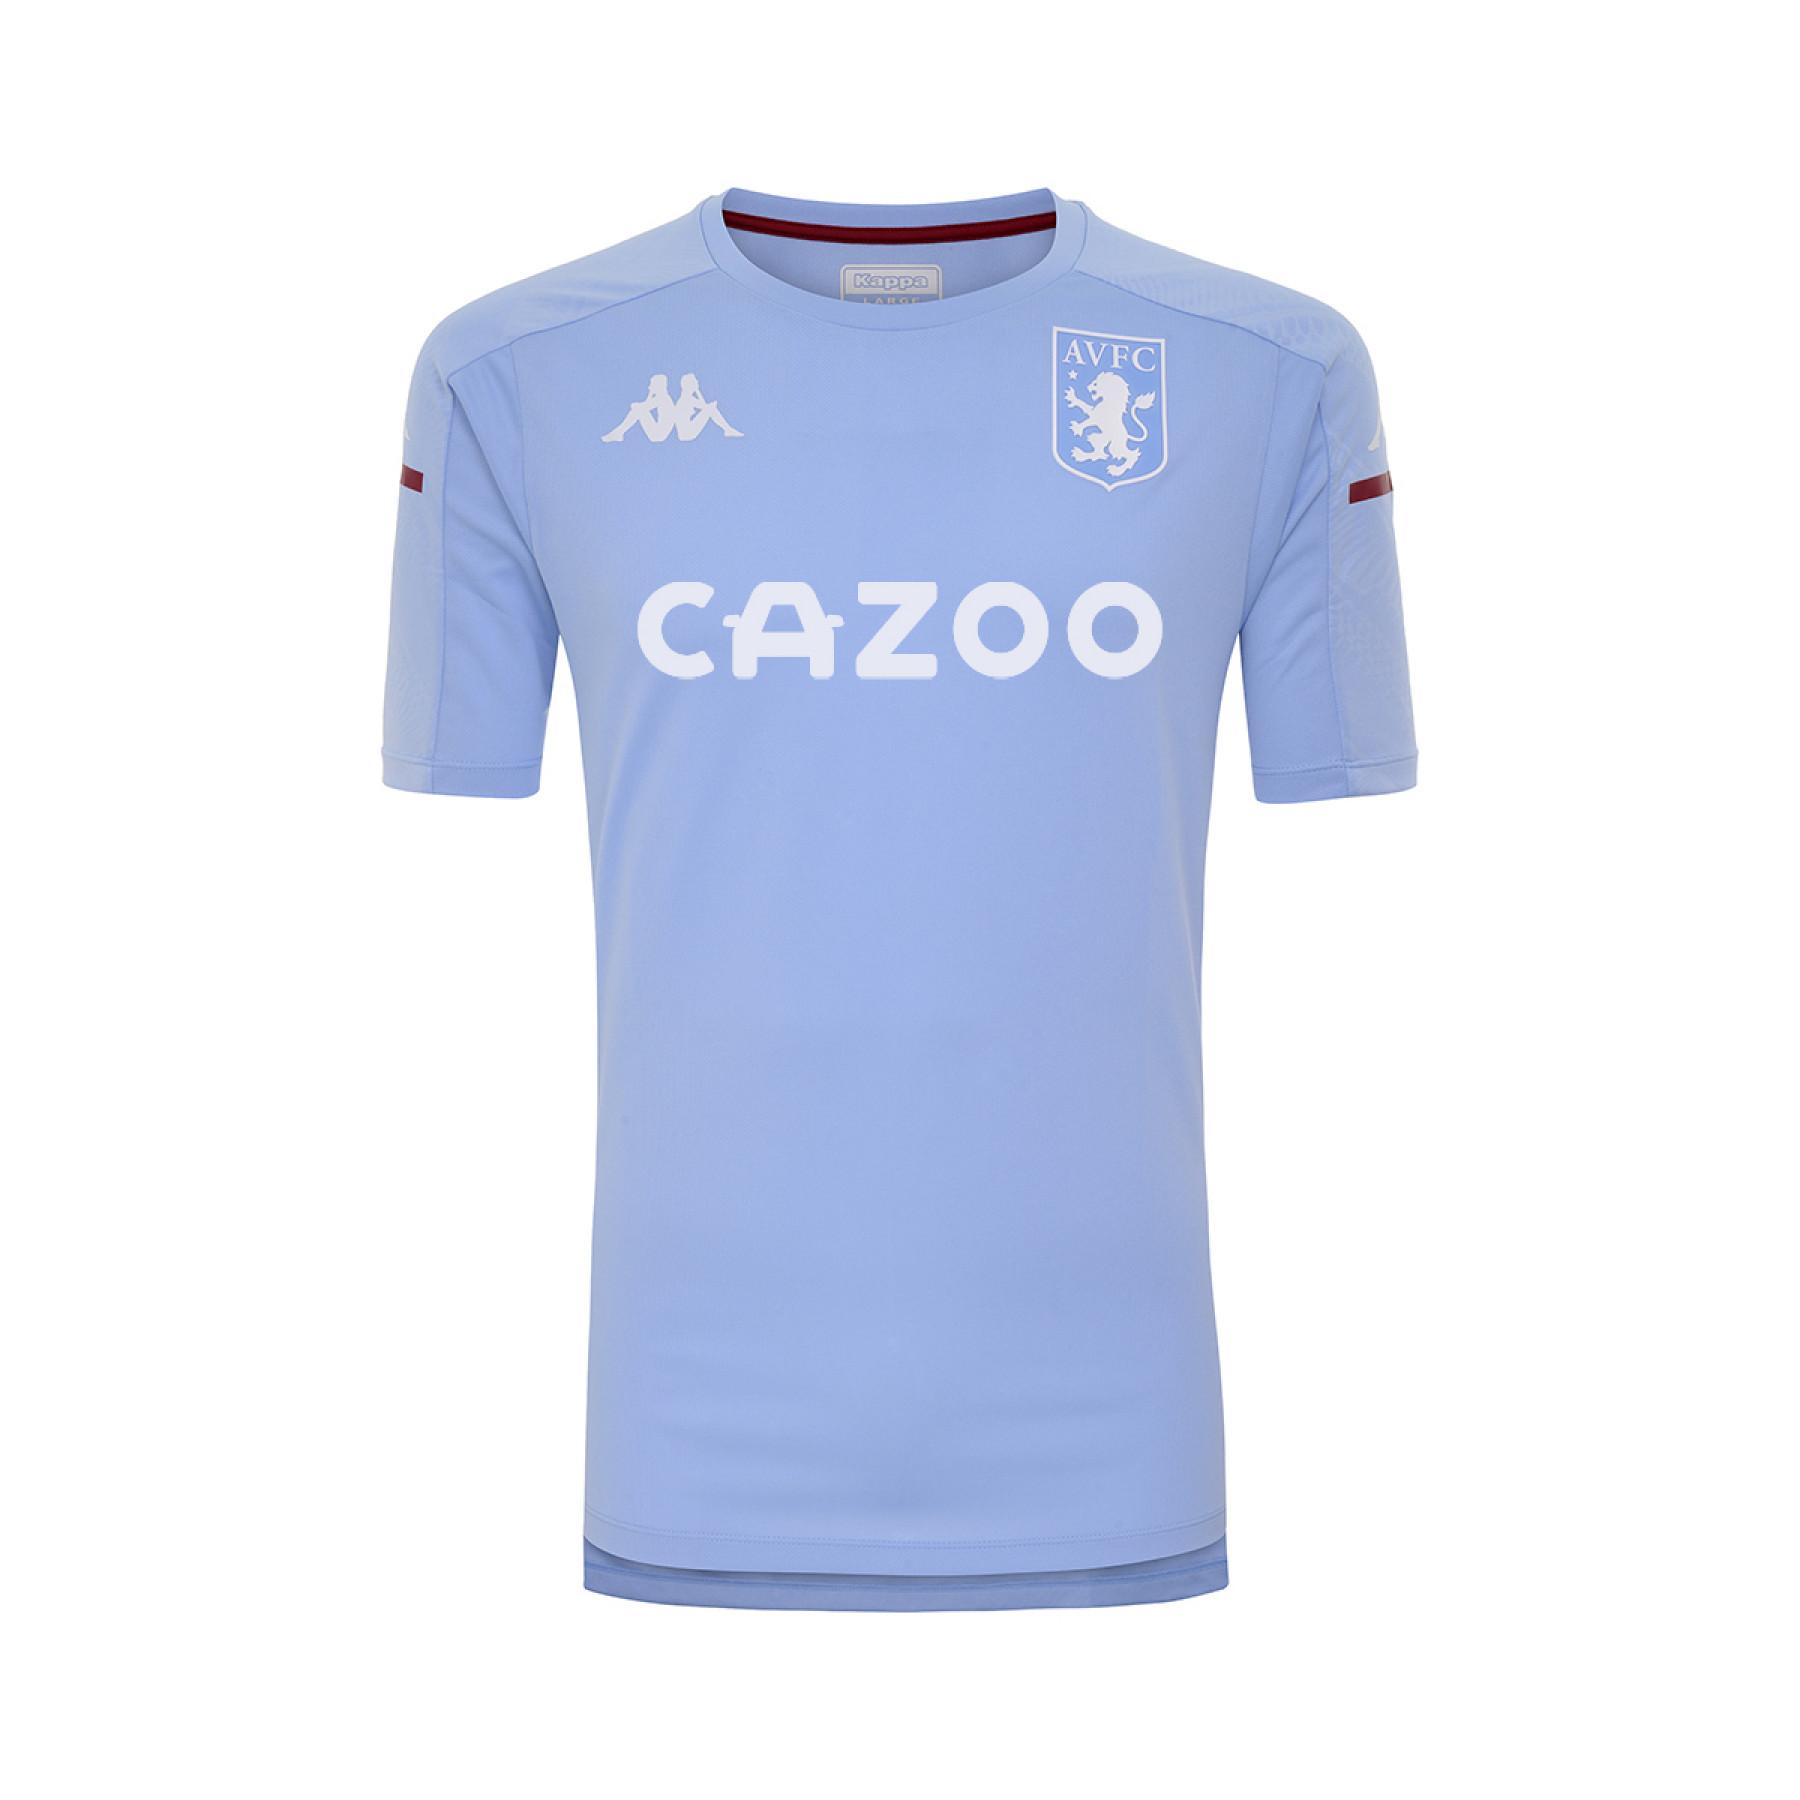 Camiseta Aston Villa FC 2020/21 aboes pro 4